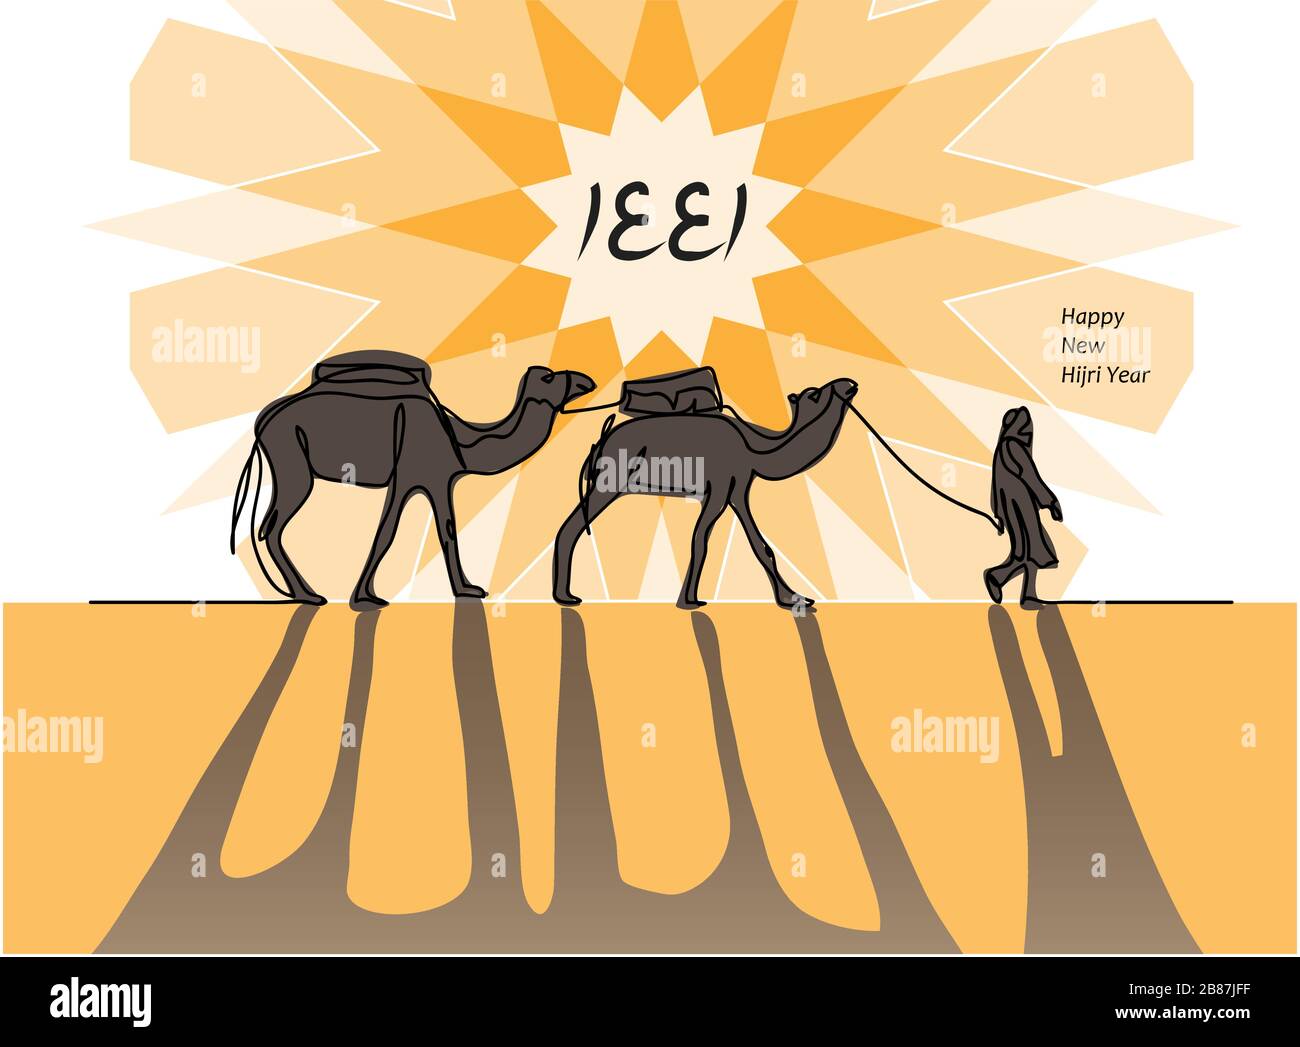 1441 Hijri year vector card with camel caravan, camelcade, , sun, desert, shadow. Stock Vector